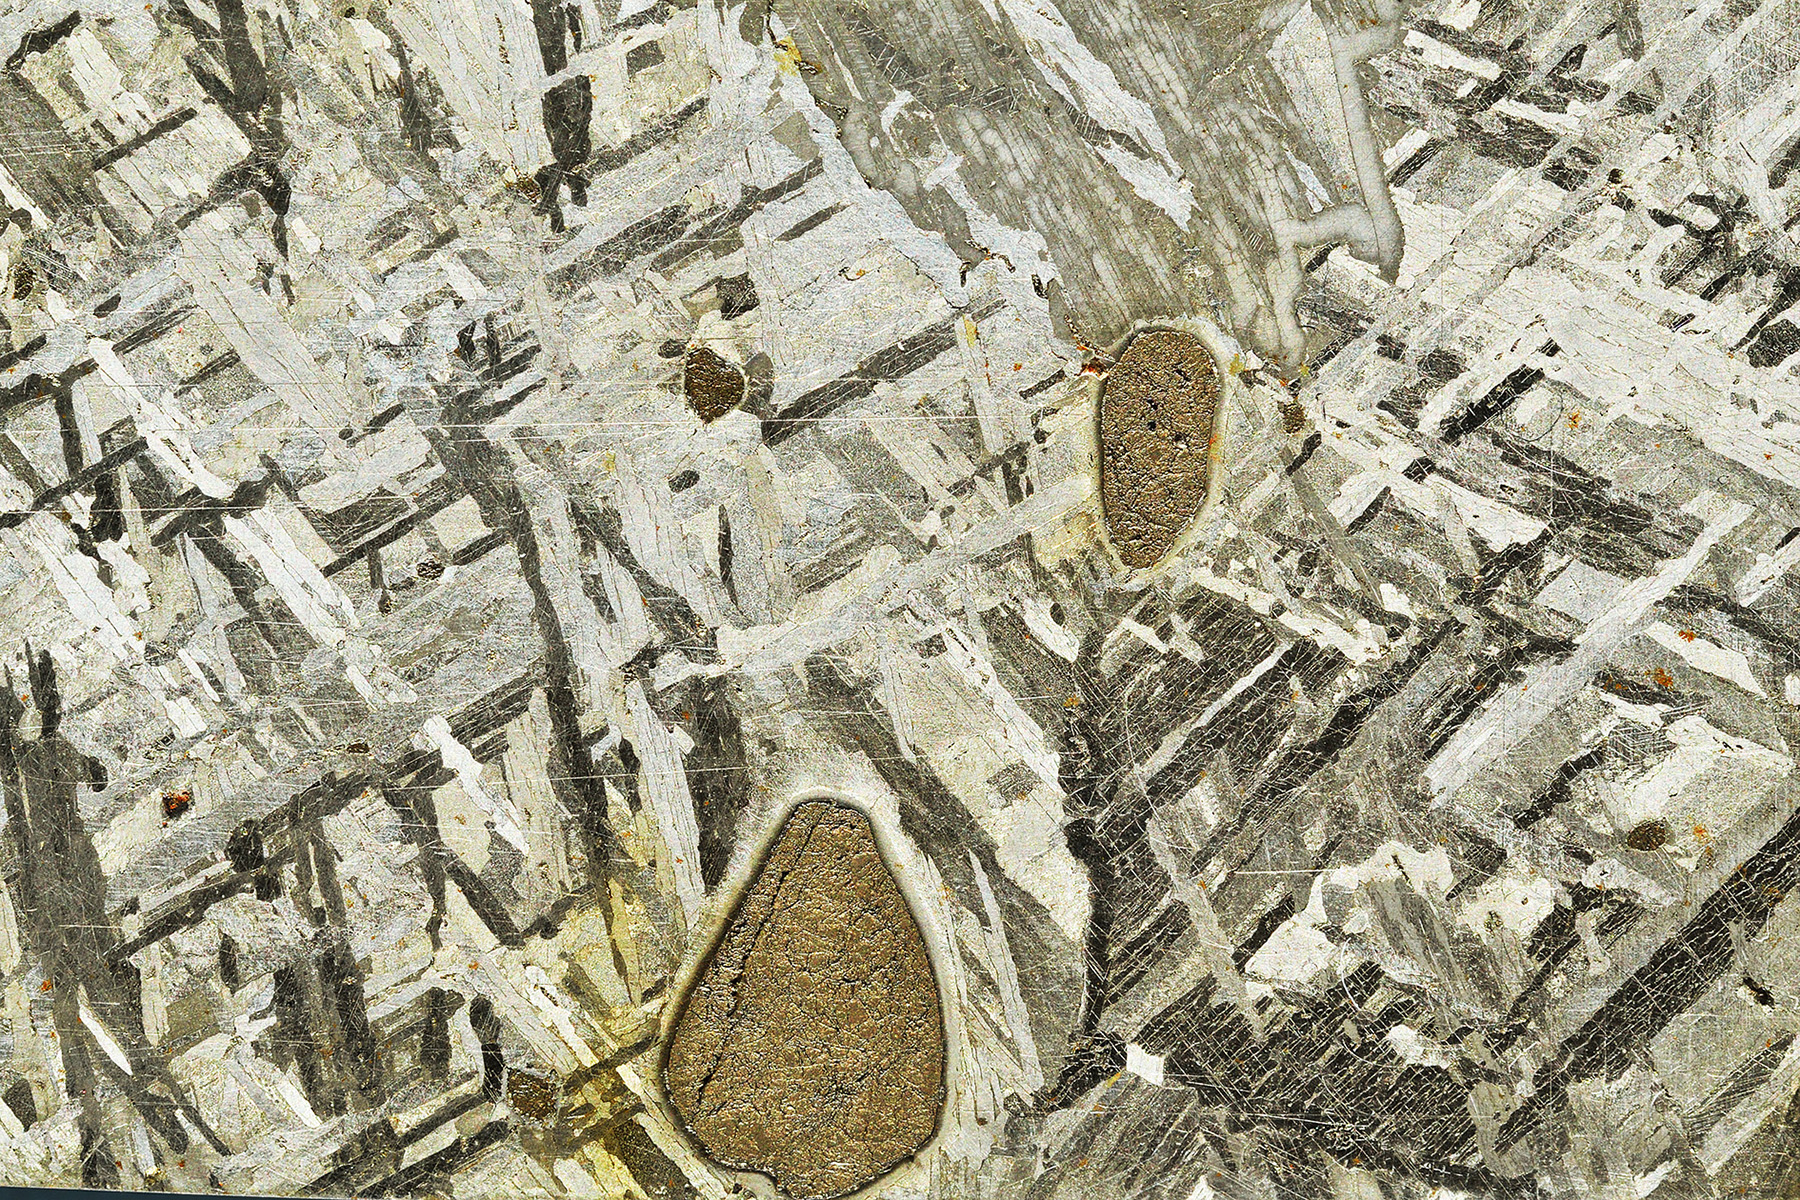 Troilite nodules in the Mont Dieu meteorite (IIE, Of). © Woreczko